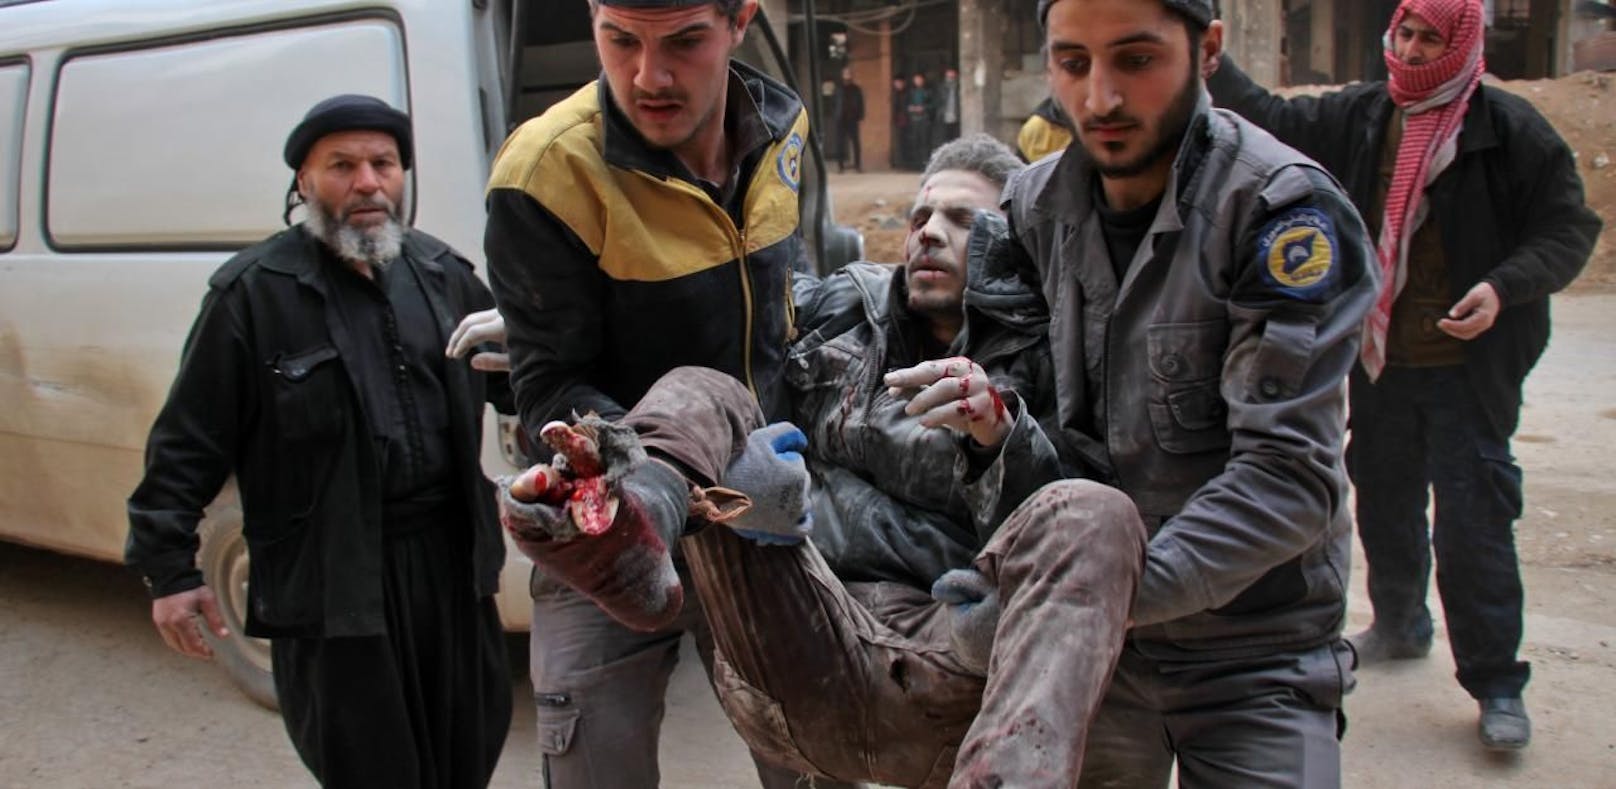 Die Lage in Syrien spitzt sich weiter zu: Mehr als 230 Tote in nur 48 Stunden.